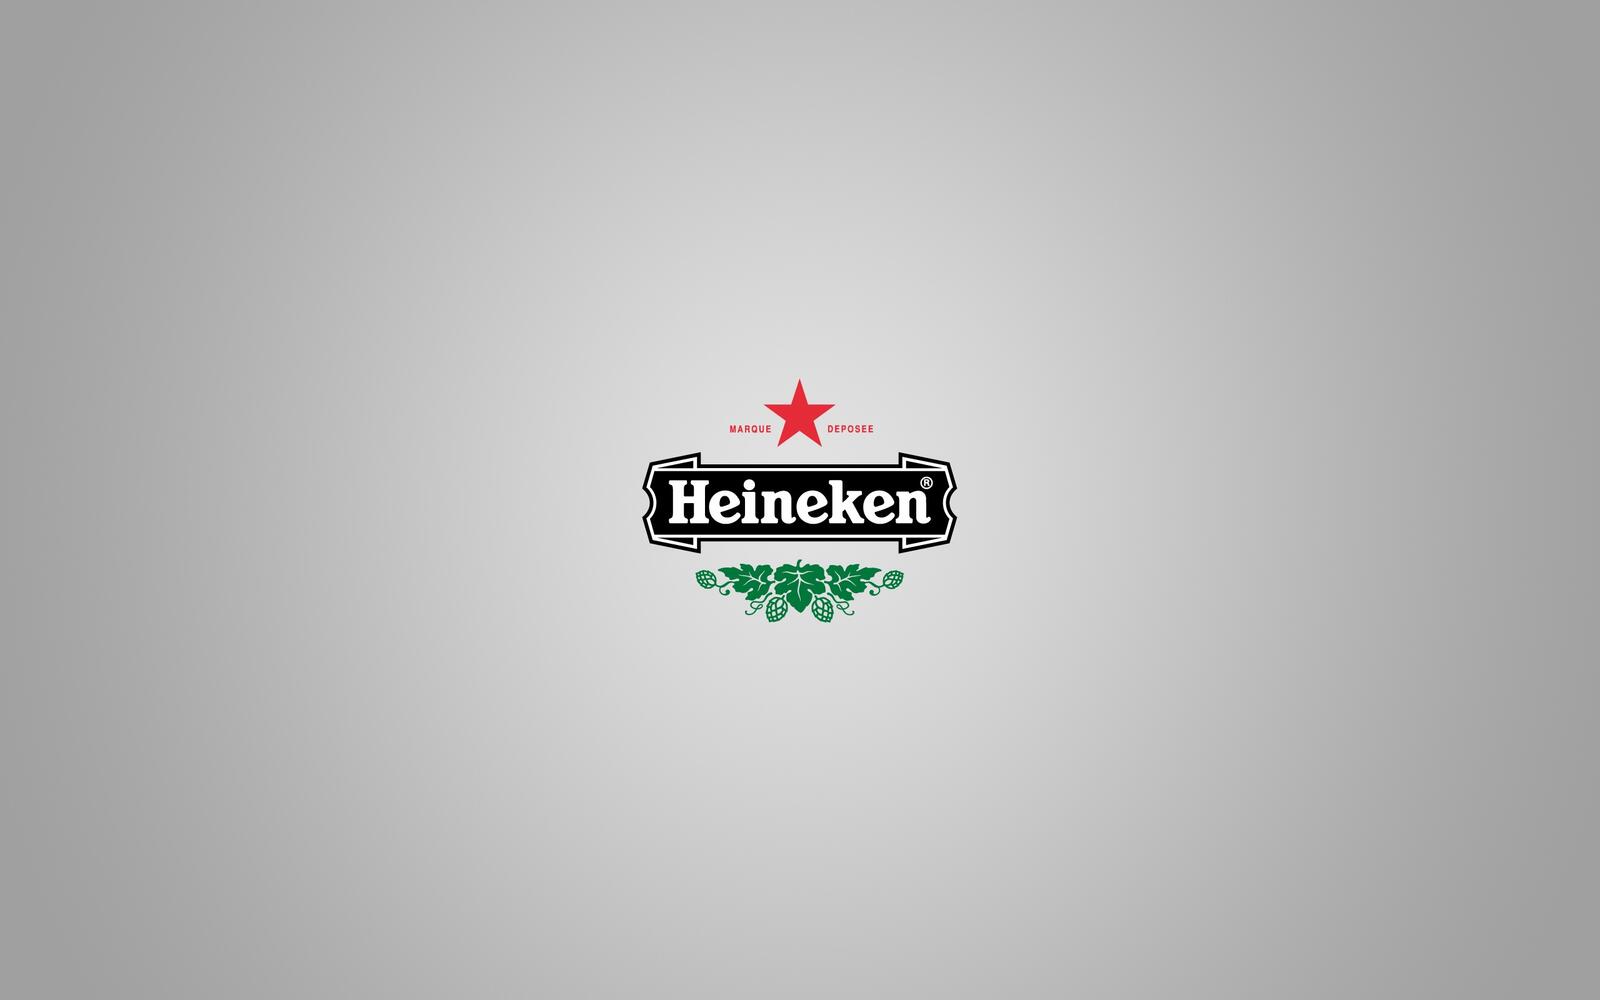 Бесплатное фото Логотип Heineken